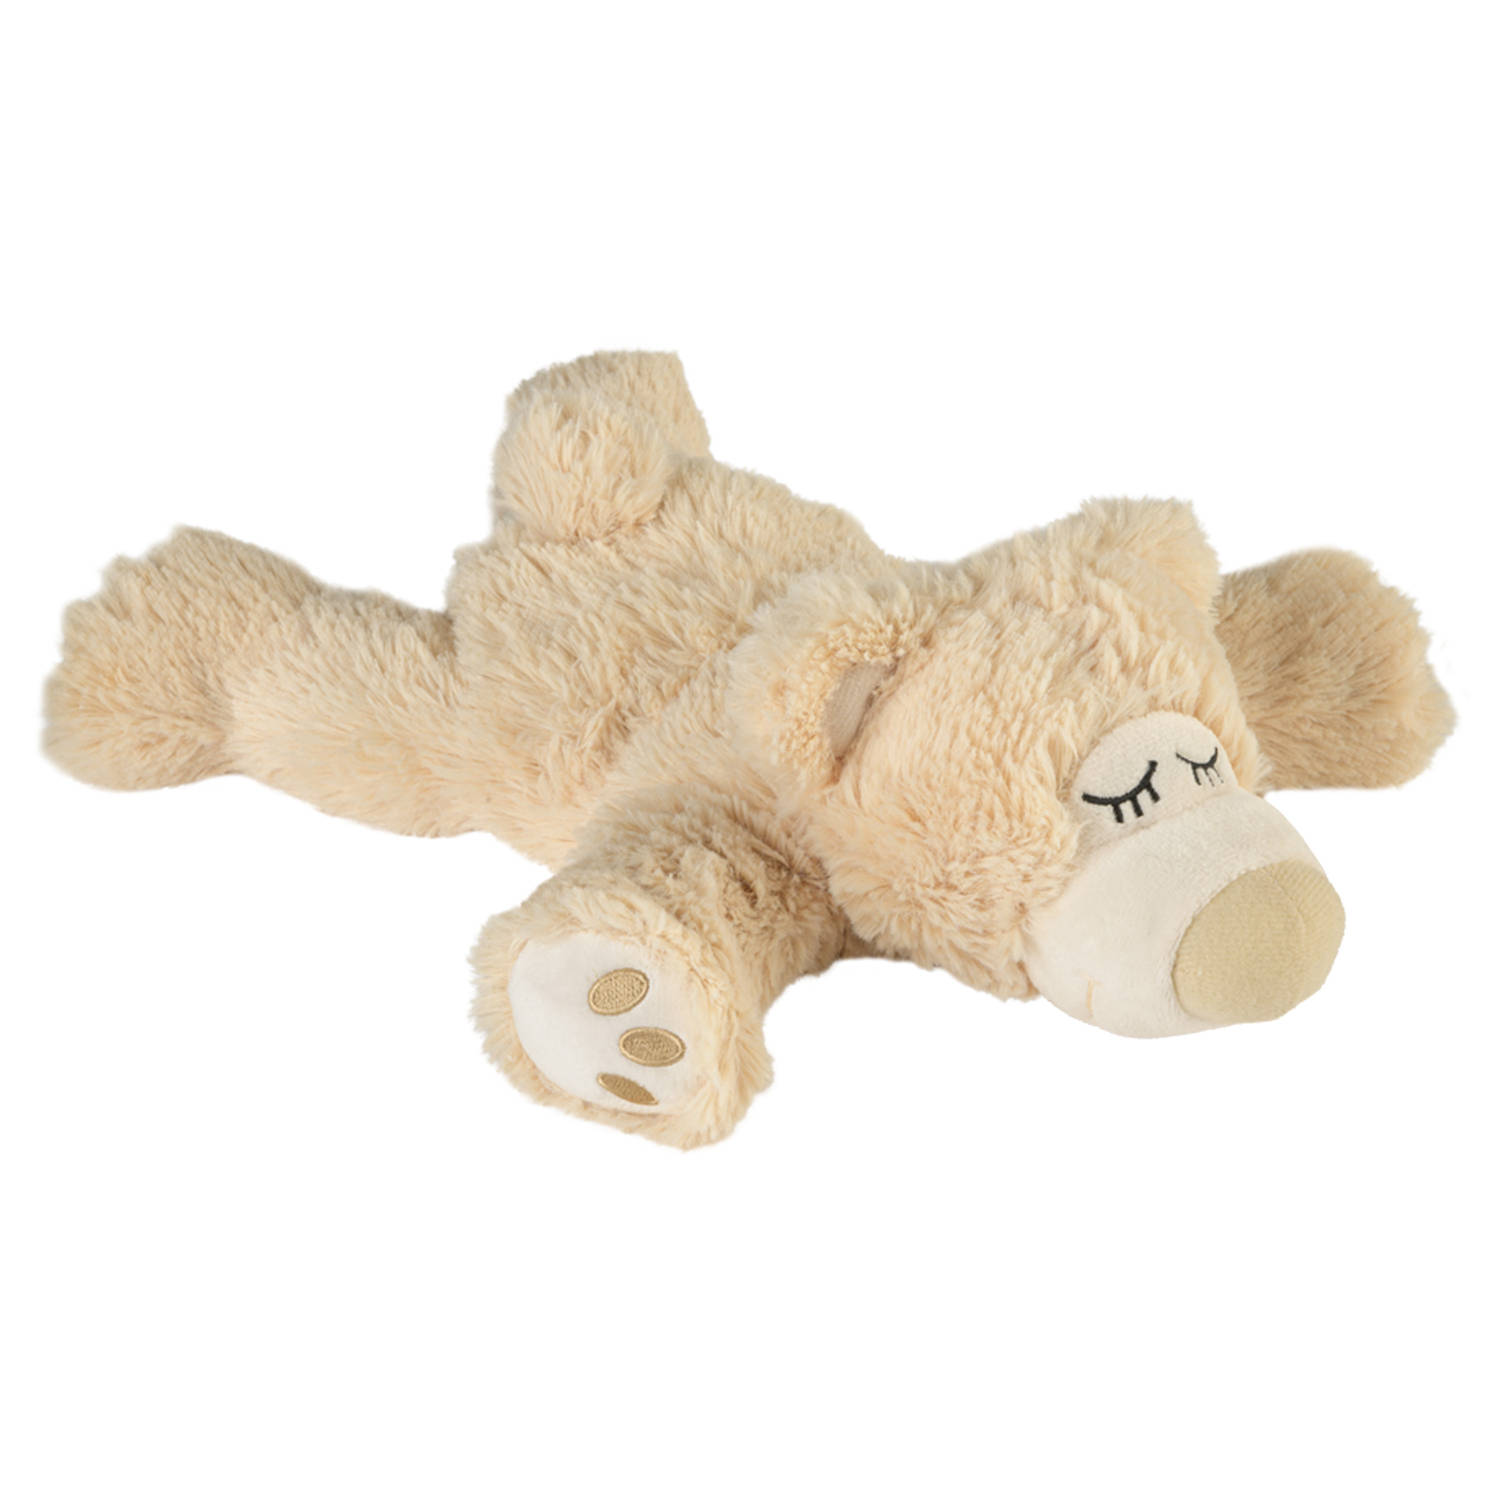 Warmies Warmte-magnetron opwarm knuffel teddybeer beige 30 cm pittenzak Opwarmknuffels